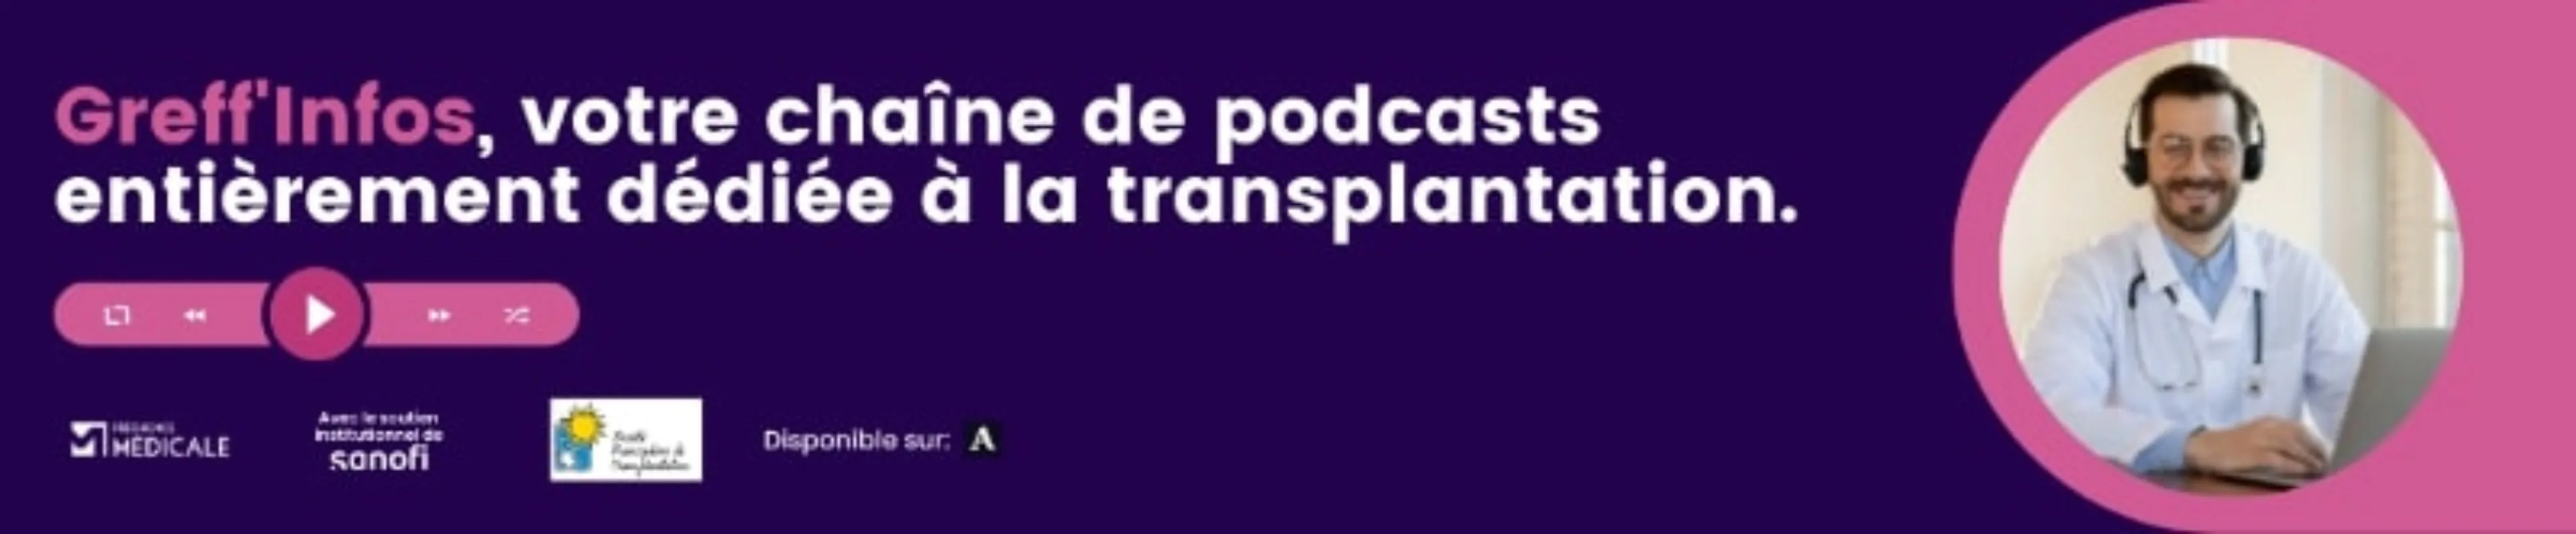 Greff'Infos, votre chaîne de podcasts entièrement dédiée à la transplantation